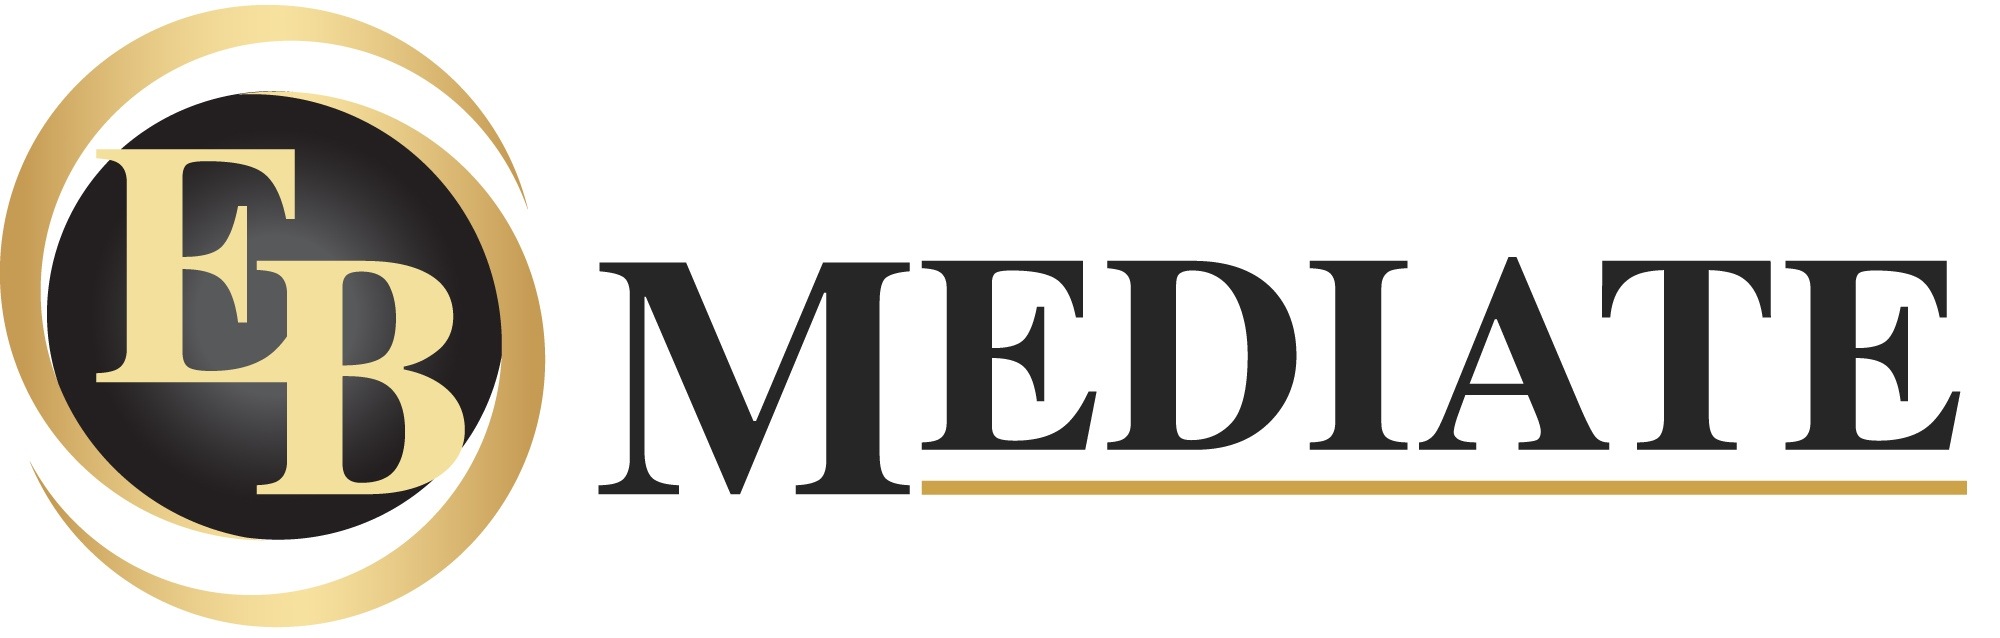 EB Mediate logo